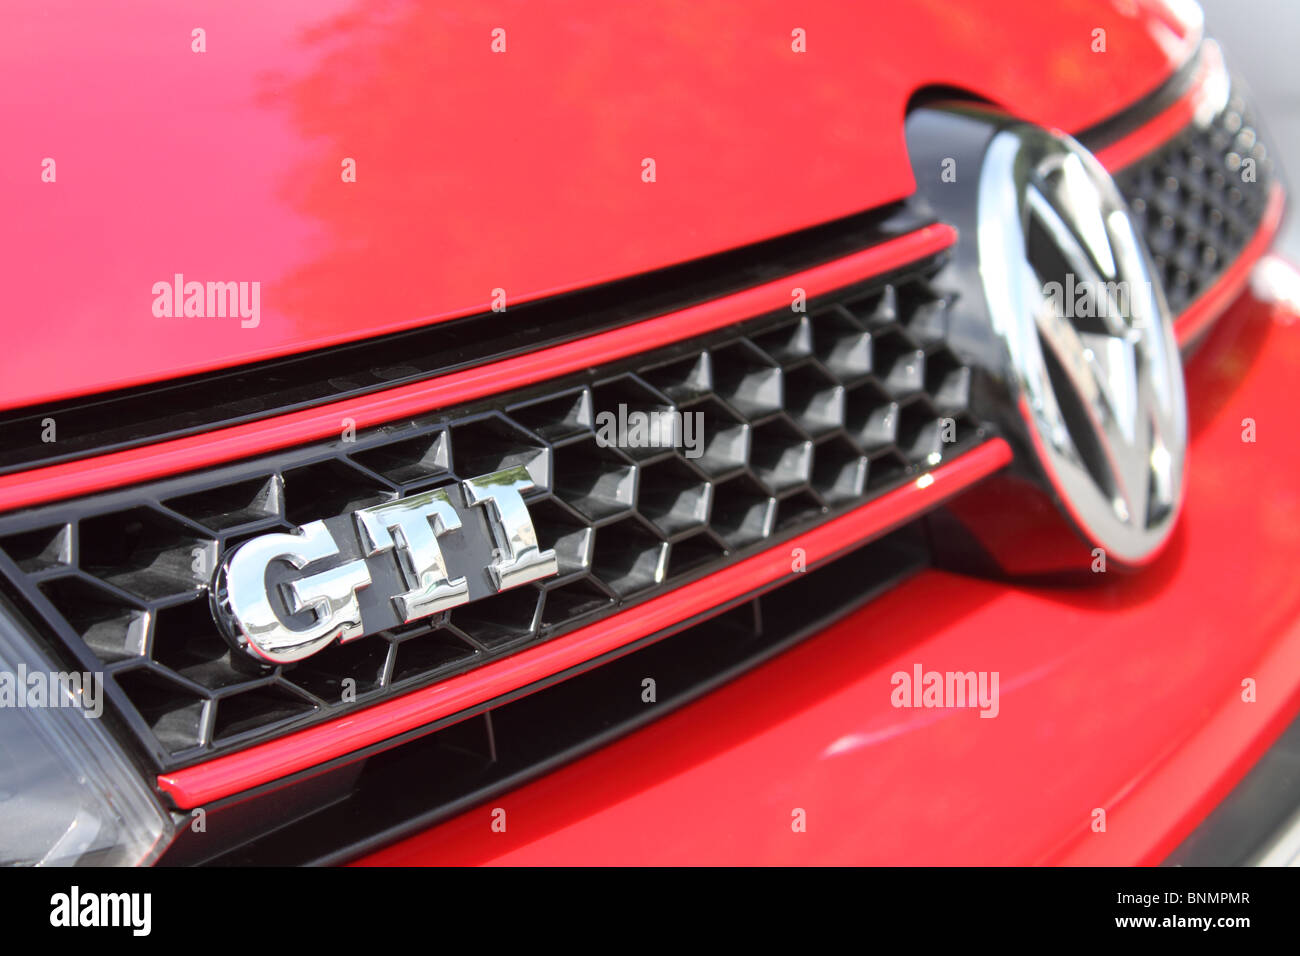 Détail de grill d'une Volkswagen Golf GTi rouge Banque D'Images